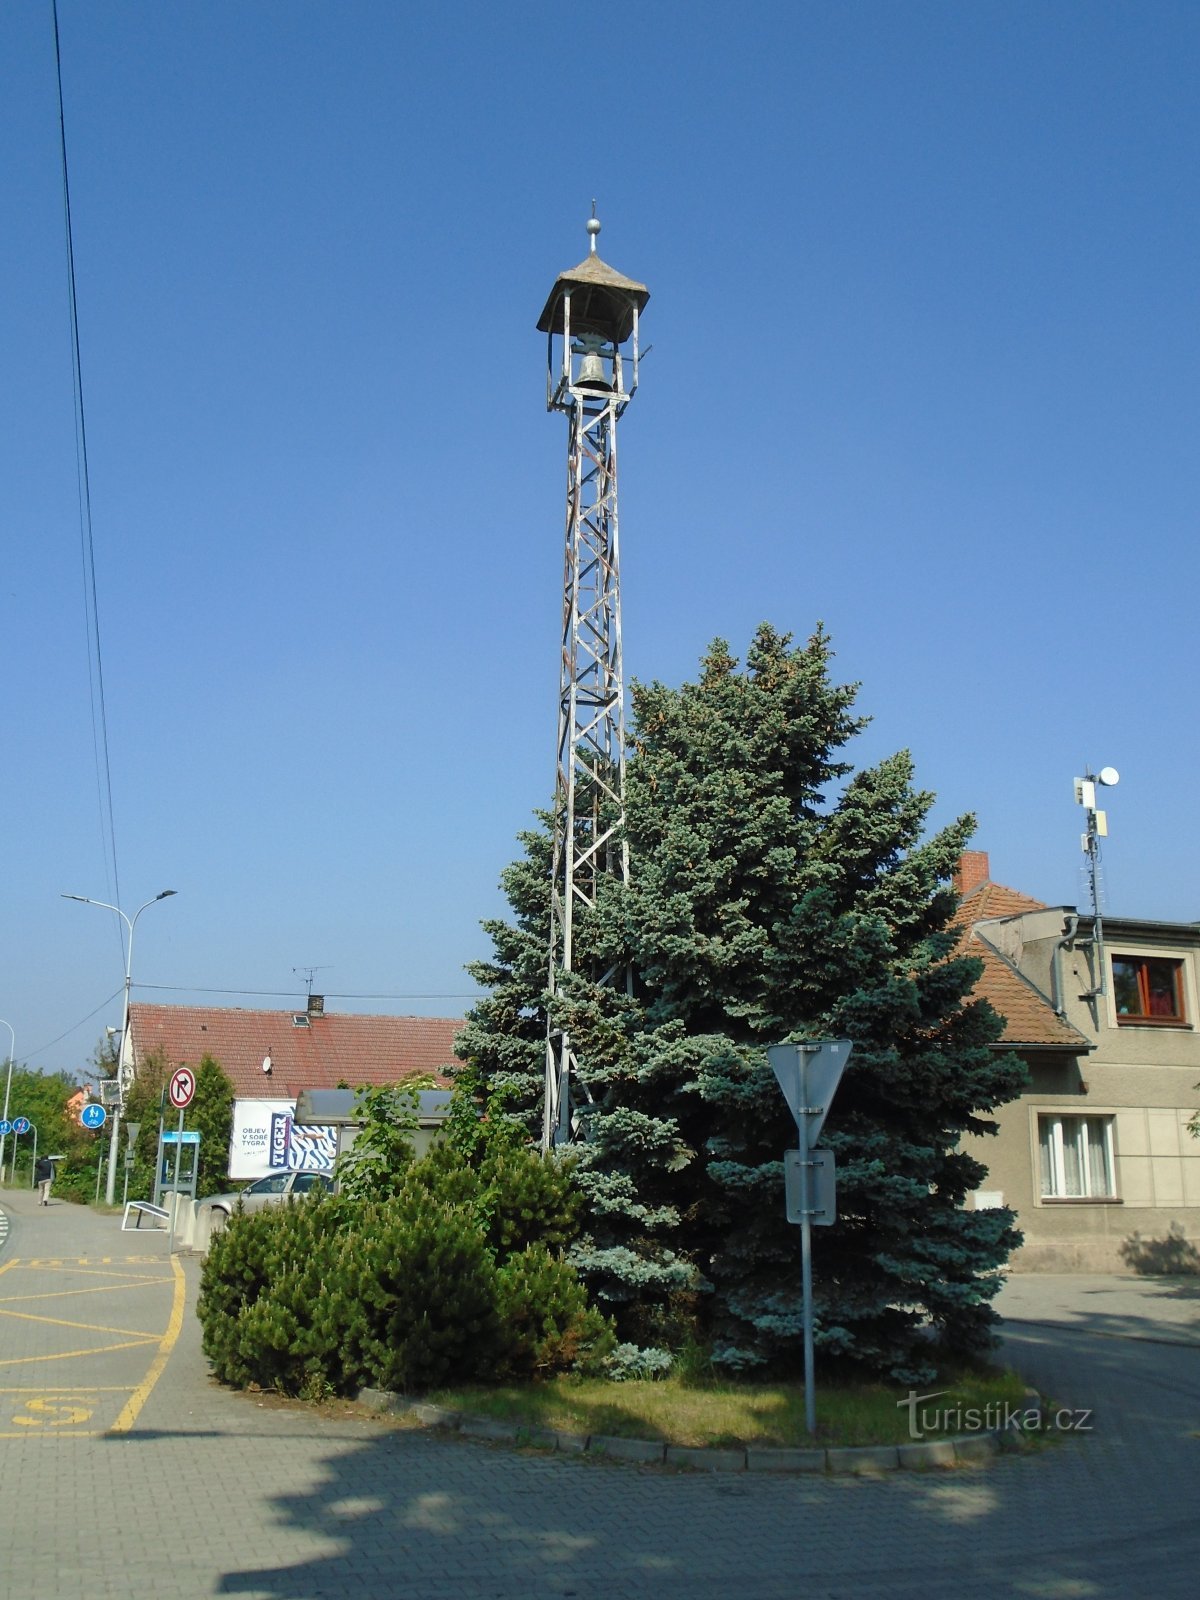 鐘楼 (Blešno)